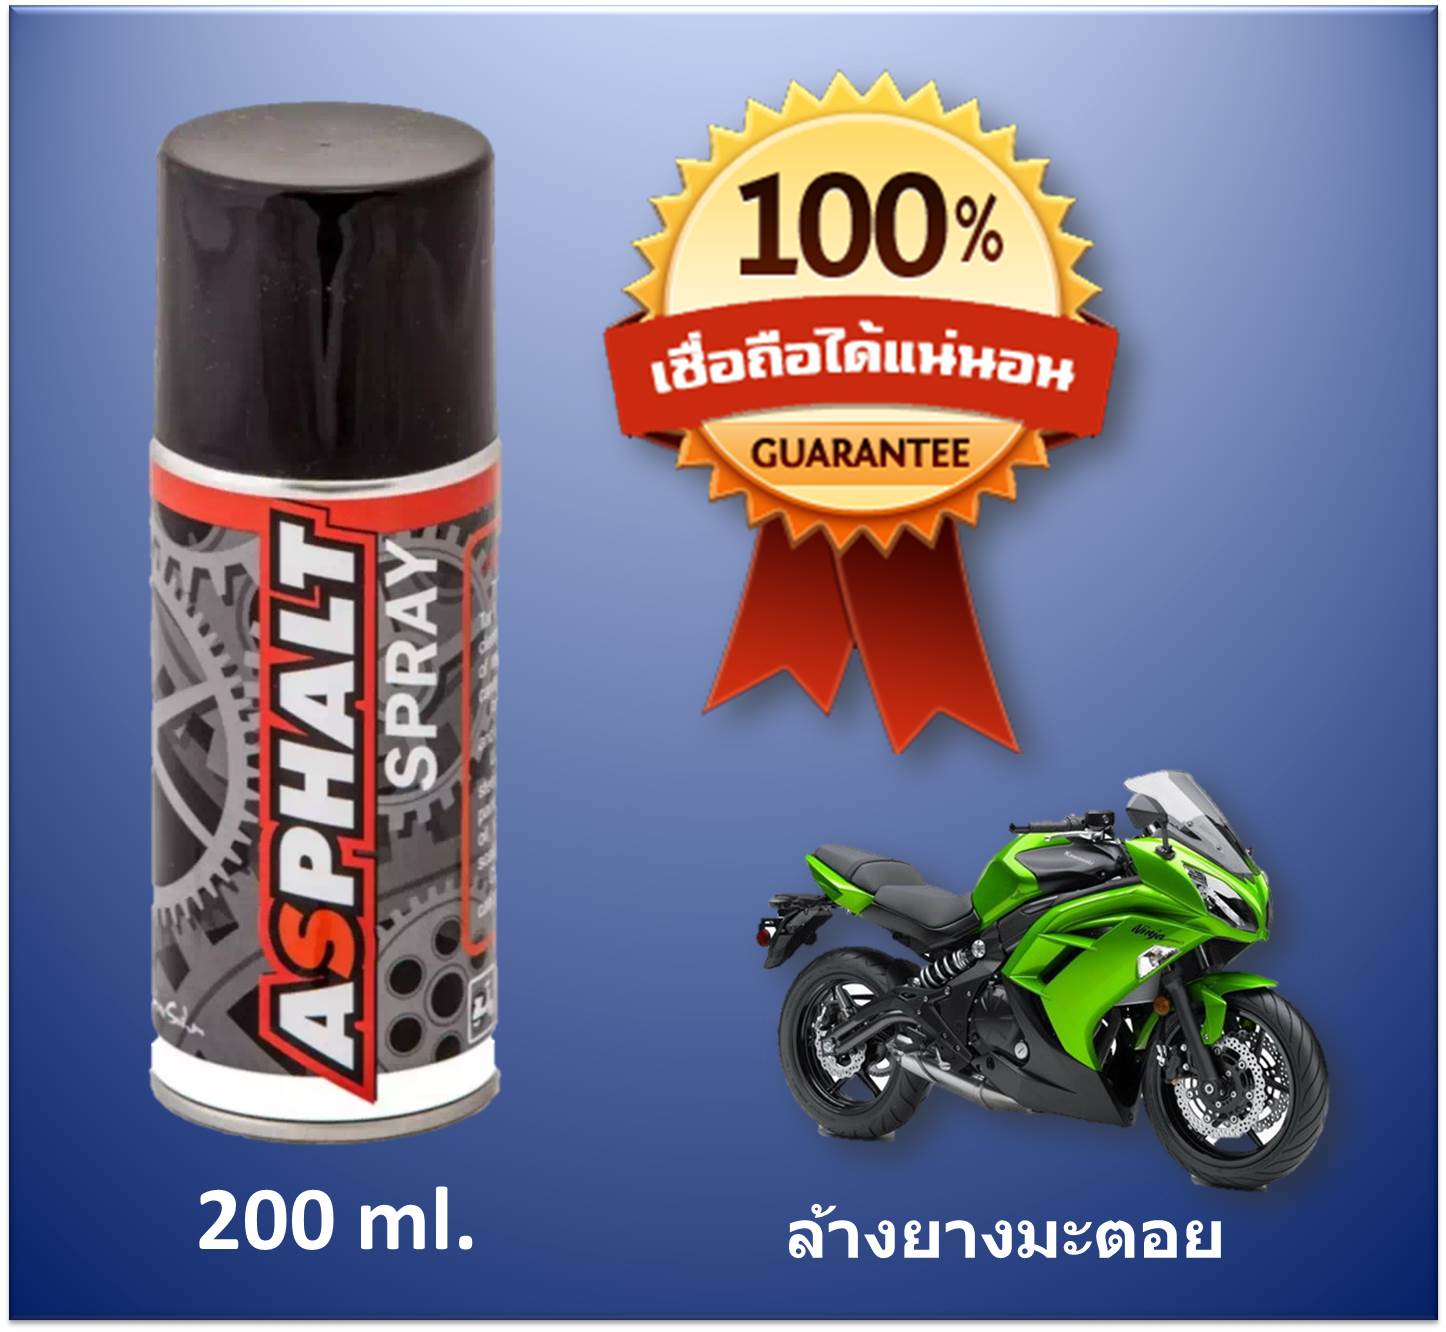 Asphalt Spray สเปรย์ล้างยางมะตอย รถมอเตอร์ไซด์ (Motorcycle) ขนาด 200 ml. เหมาะสำหรับ Bigbike โดยเฉพาะ (บิ๊กไบค์/รถมอไซค์/จักรยาน)